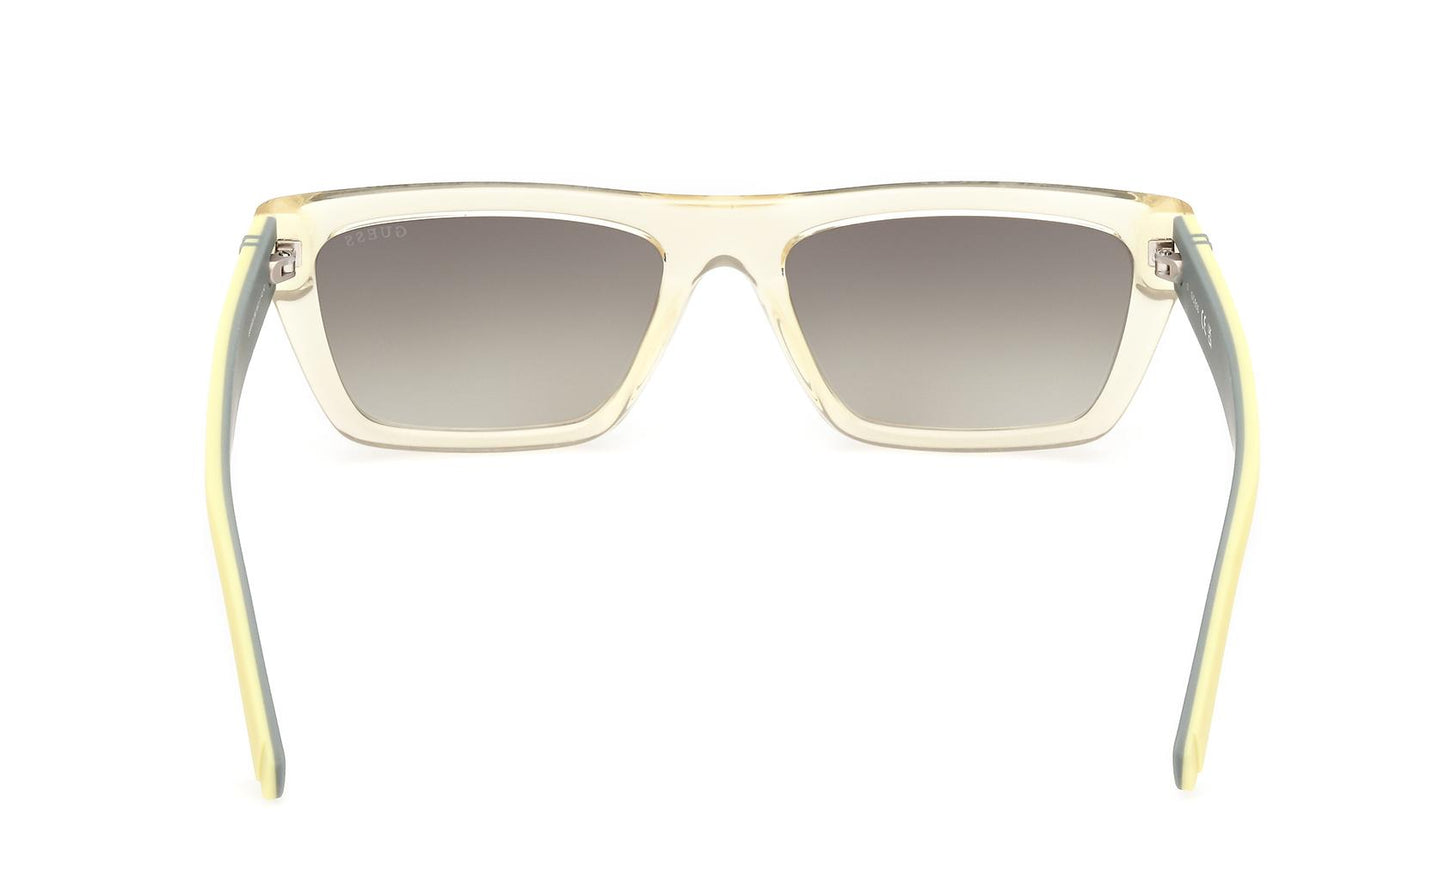 Guess Sunglasses GU00120 39C